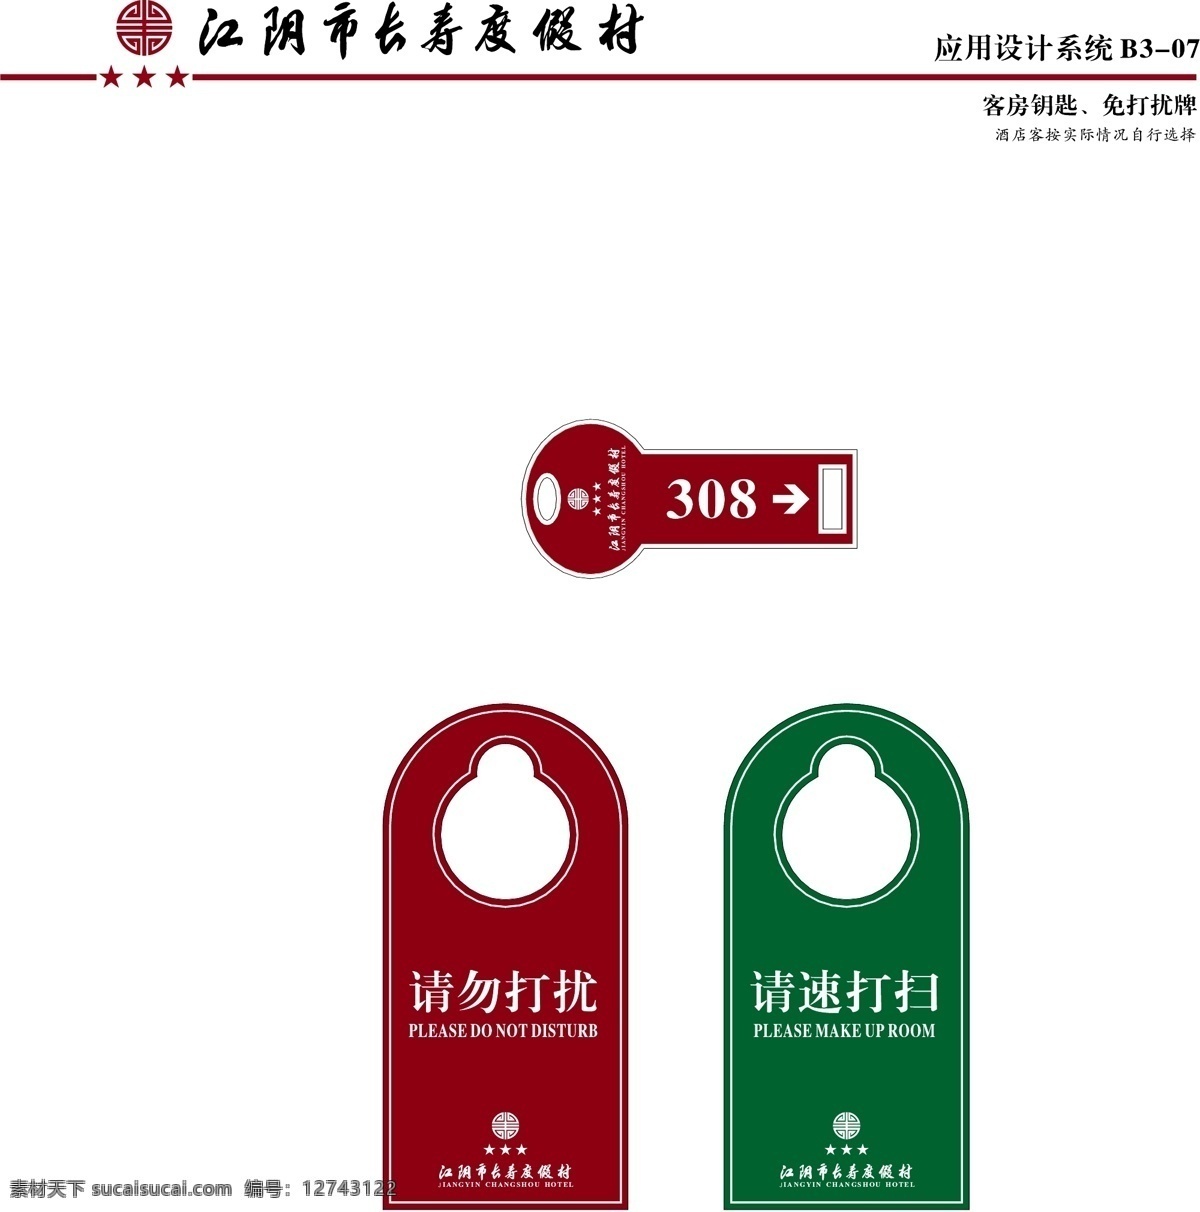 江阴 长寿 渡假村 vi vi宝典 vi设计 矢量 文件 应用系统b3 海报 其他海报设计